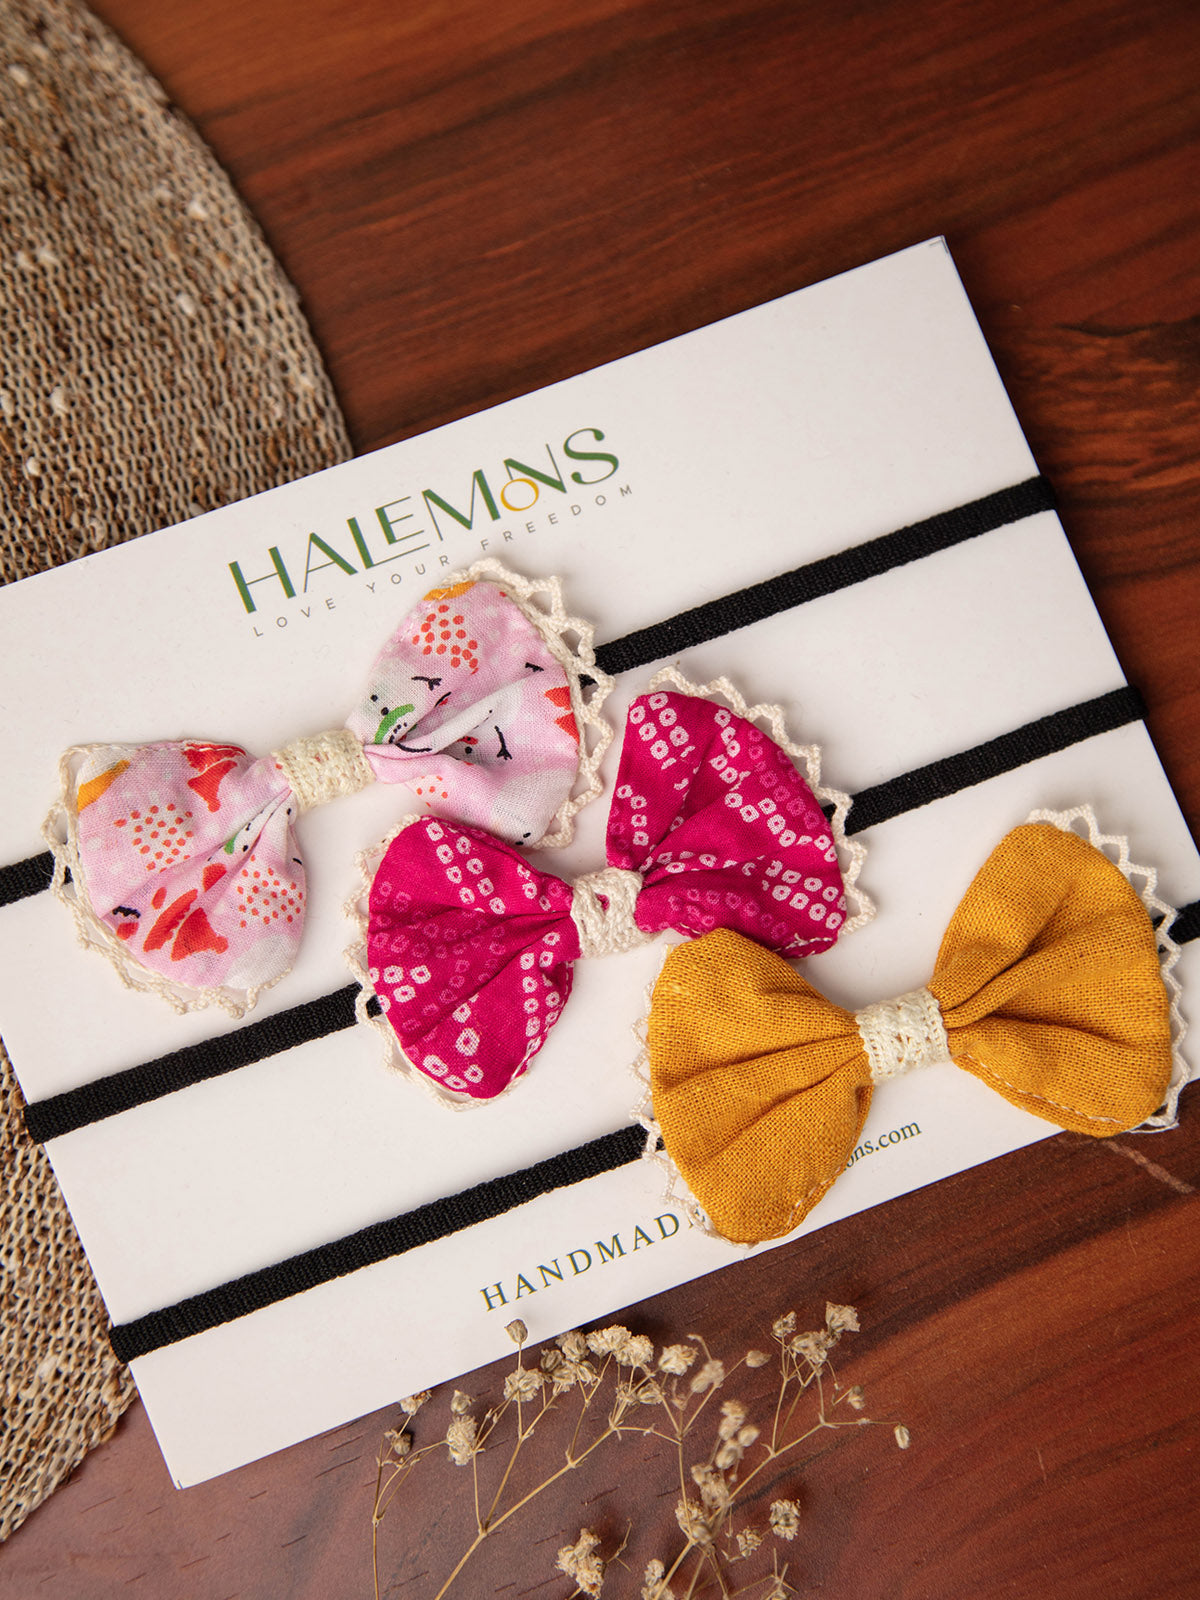 Girl's Pinky Baby Girl Toddler Handmade Bow Hair Bands pack of 3 - HALEMONS